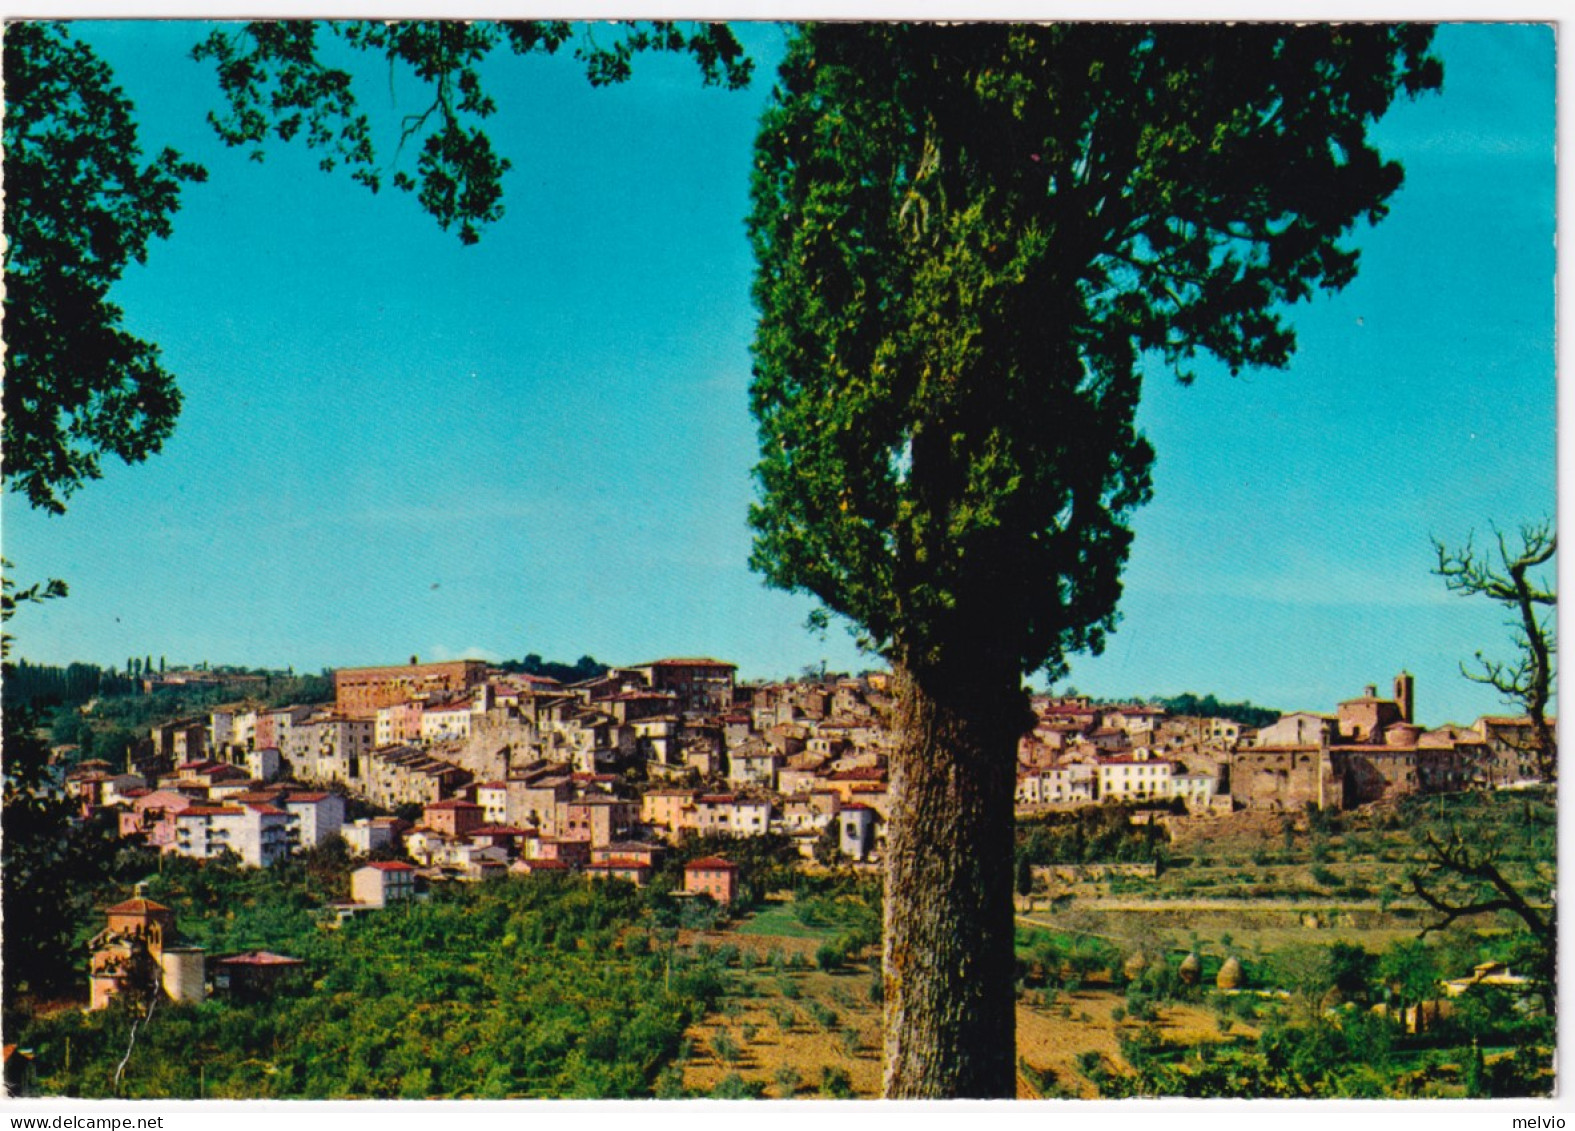 1973-CHIANCIANO TERME Panorama Viaggiata Affrancata NATALE'72 Lire 25 (1190) - 1971-80: Poststempel